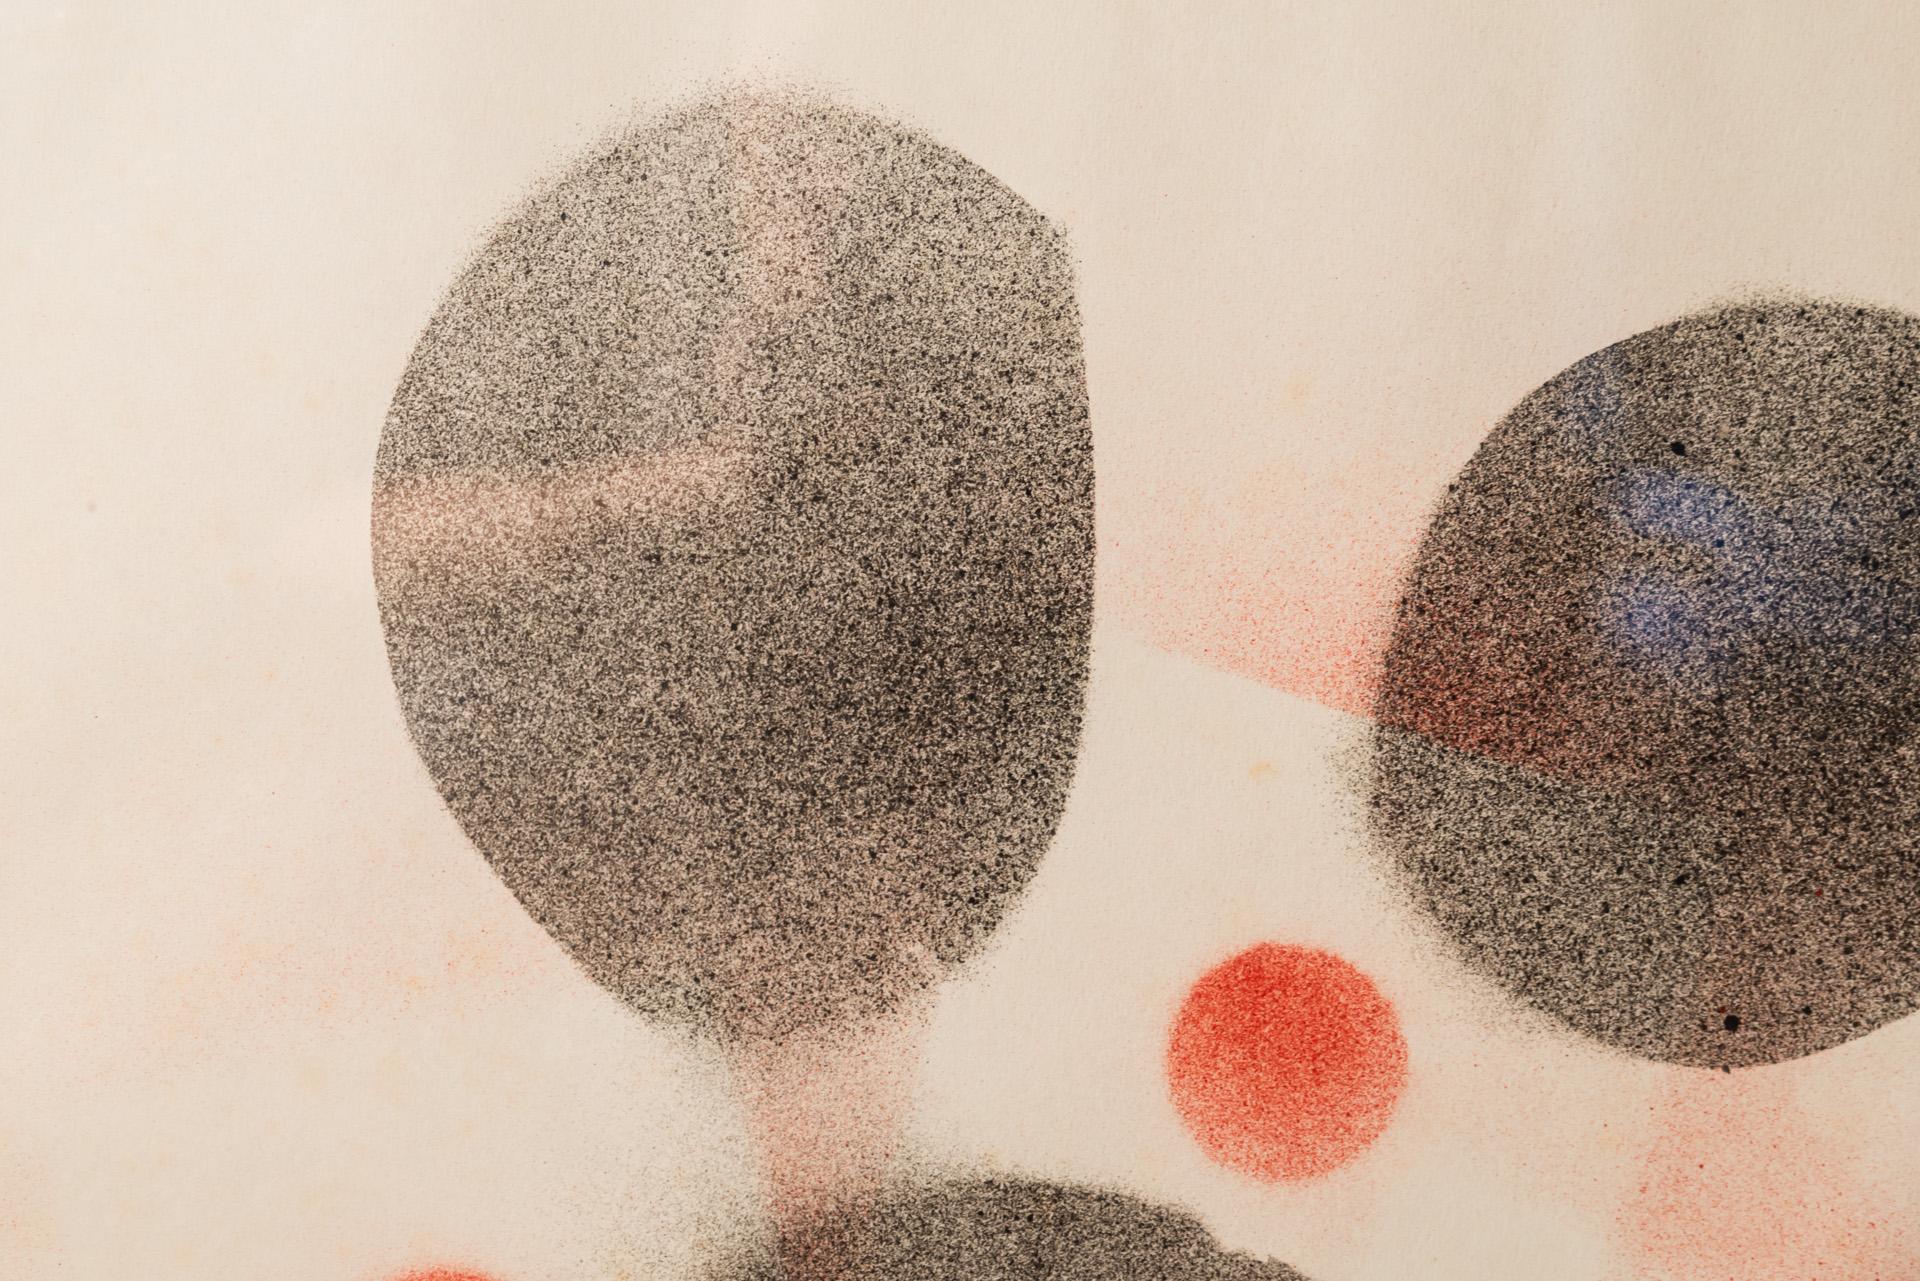 Albert Chubac (1925-20008), Composition, 
Peinture en spray et pochoirs,
Timbre d'atelier en bas à droite, 
Encadré, 
vers 1960, France. 

Mesures : Largeur 50 cm, Hauteur 65 cm.

Albert Chubac est né à Genève en 1920. Après des études d'art